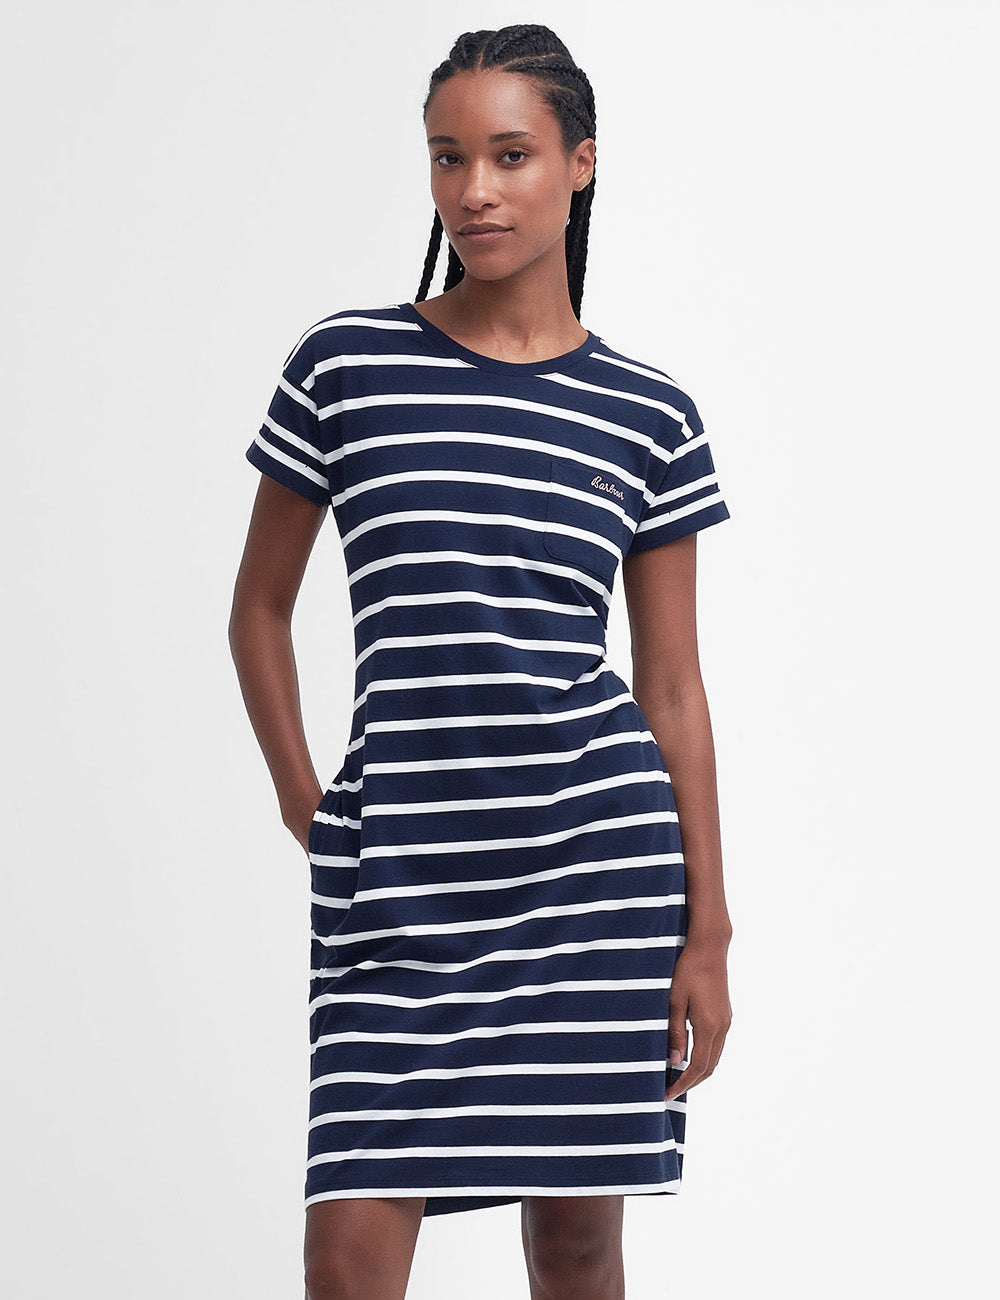 Barbour Otterburn Stripe Dress - Navy/White